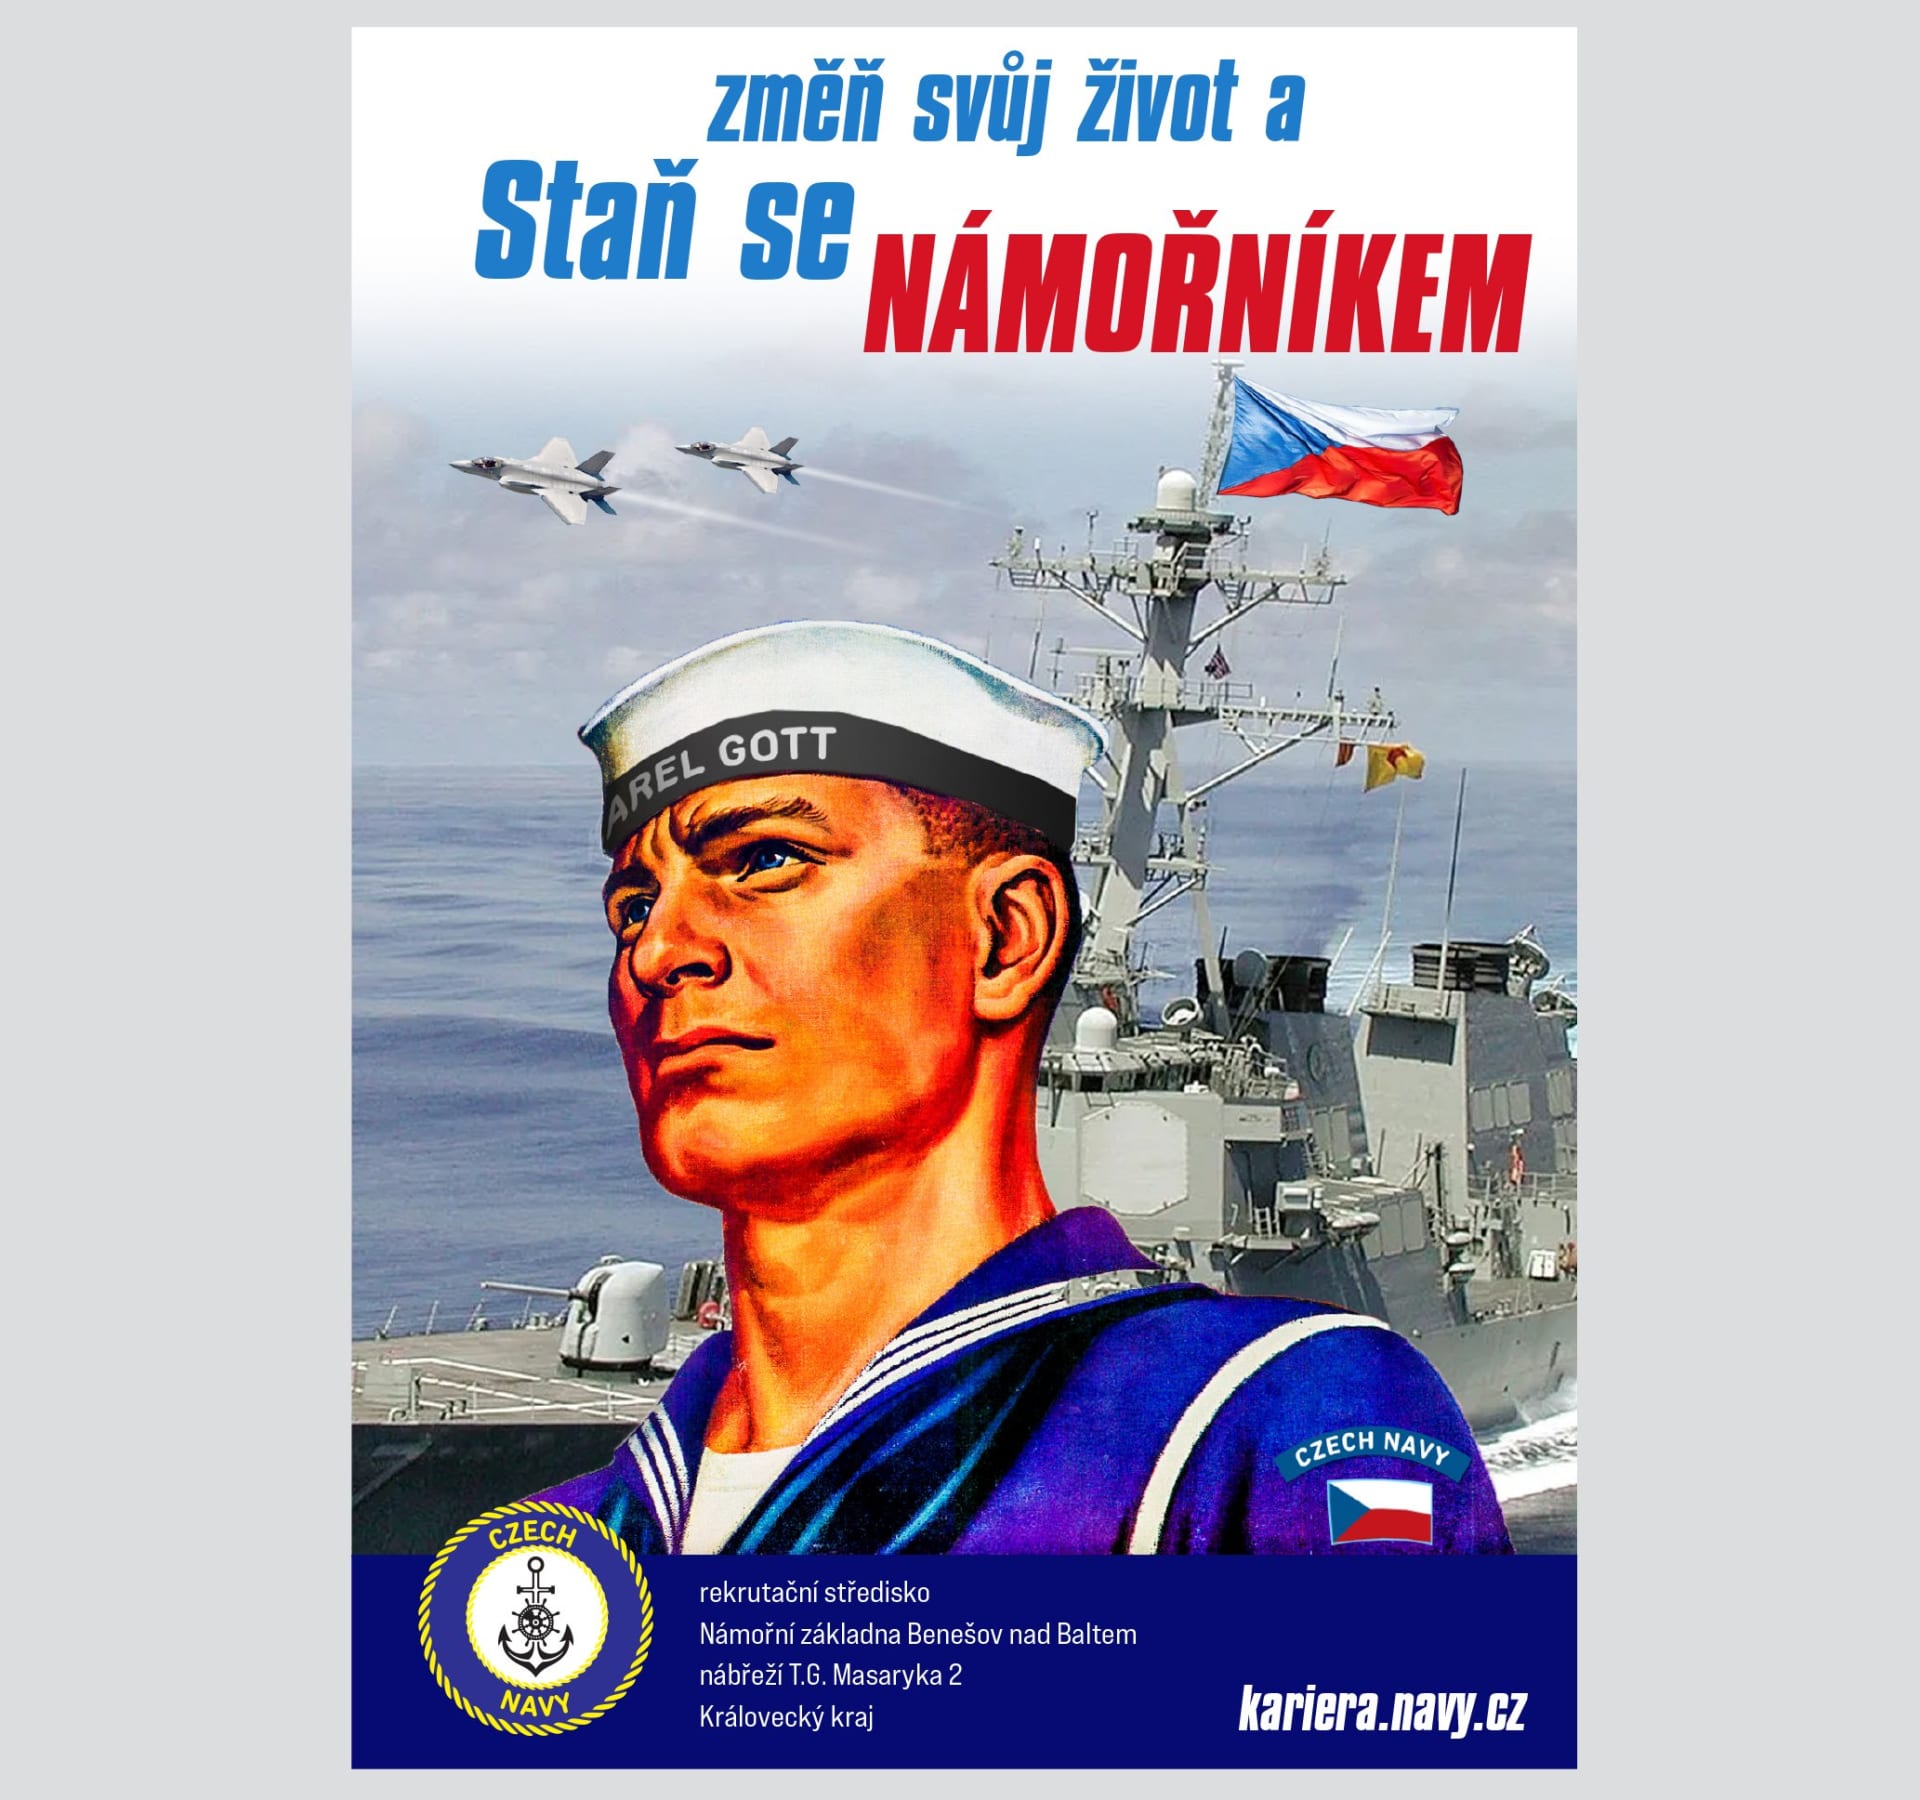 „Staň se námořníkem,“ stojí na fiktivním plakátu pro nábor rekrutů, kteří by mohli sloužit v české baltské flotile v Královeckém kraji. Jejich námořní základnou by byl pochopitelně Benešov nad Baltem.